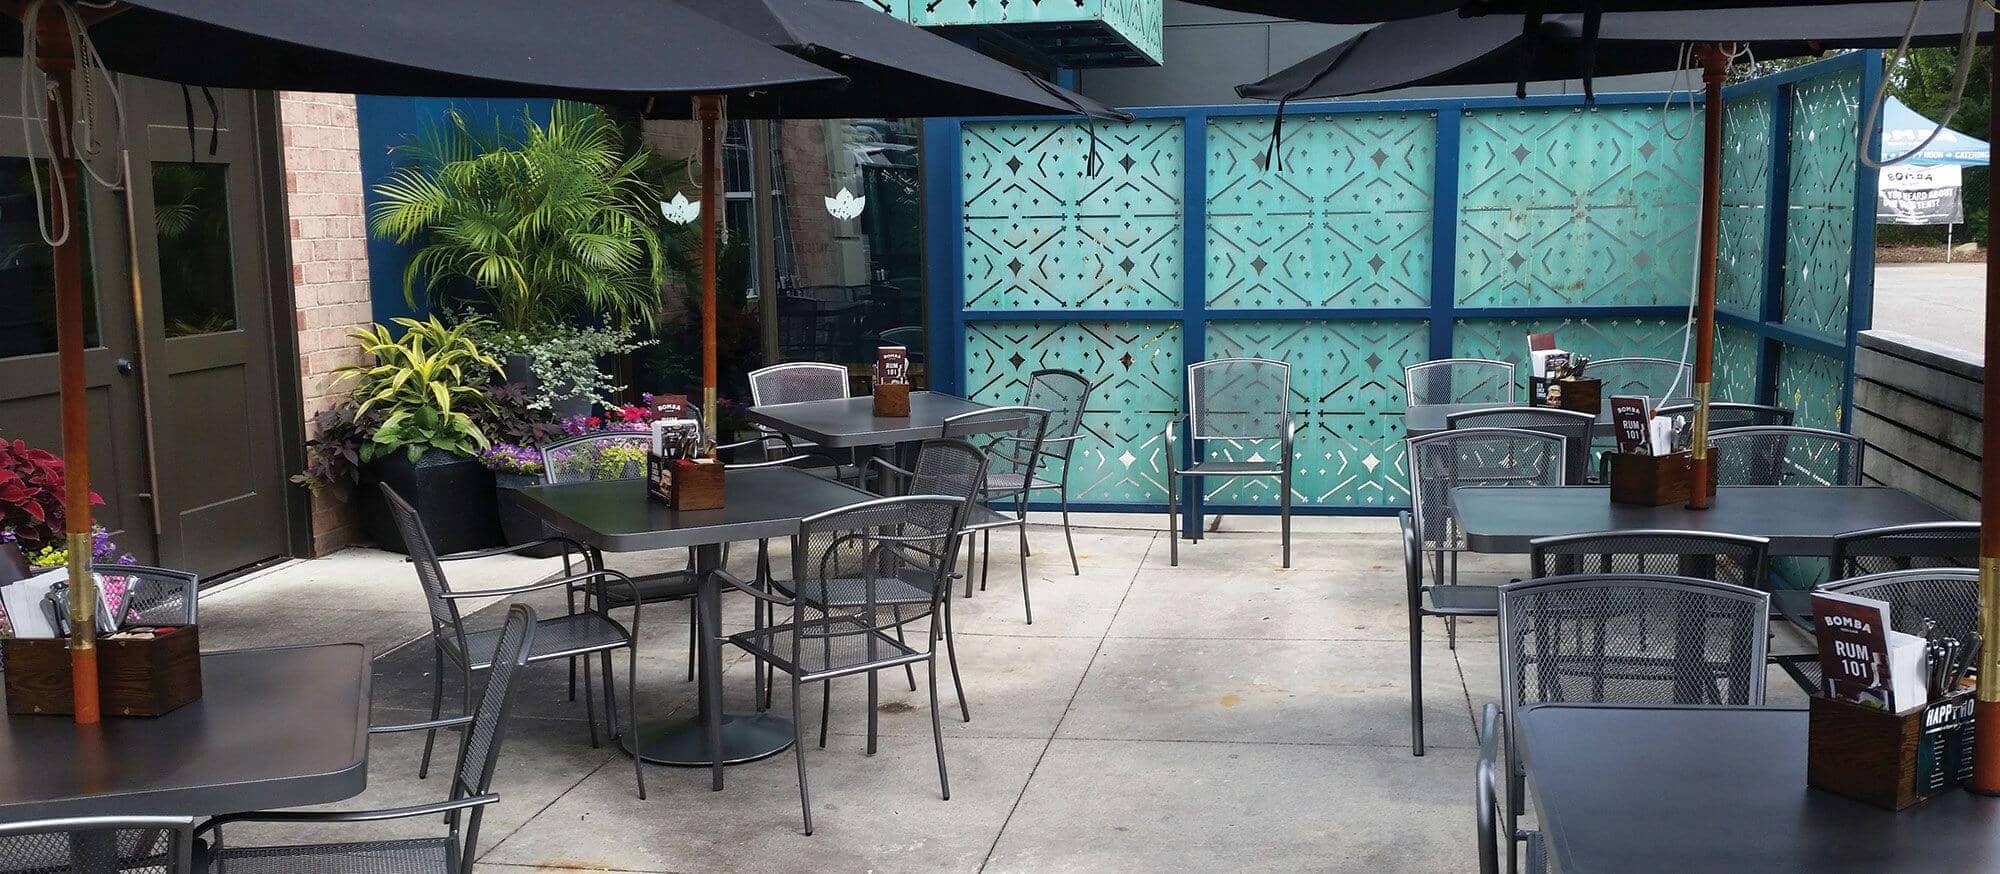 Wabash Valley modern outdoor restaurant furniture